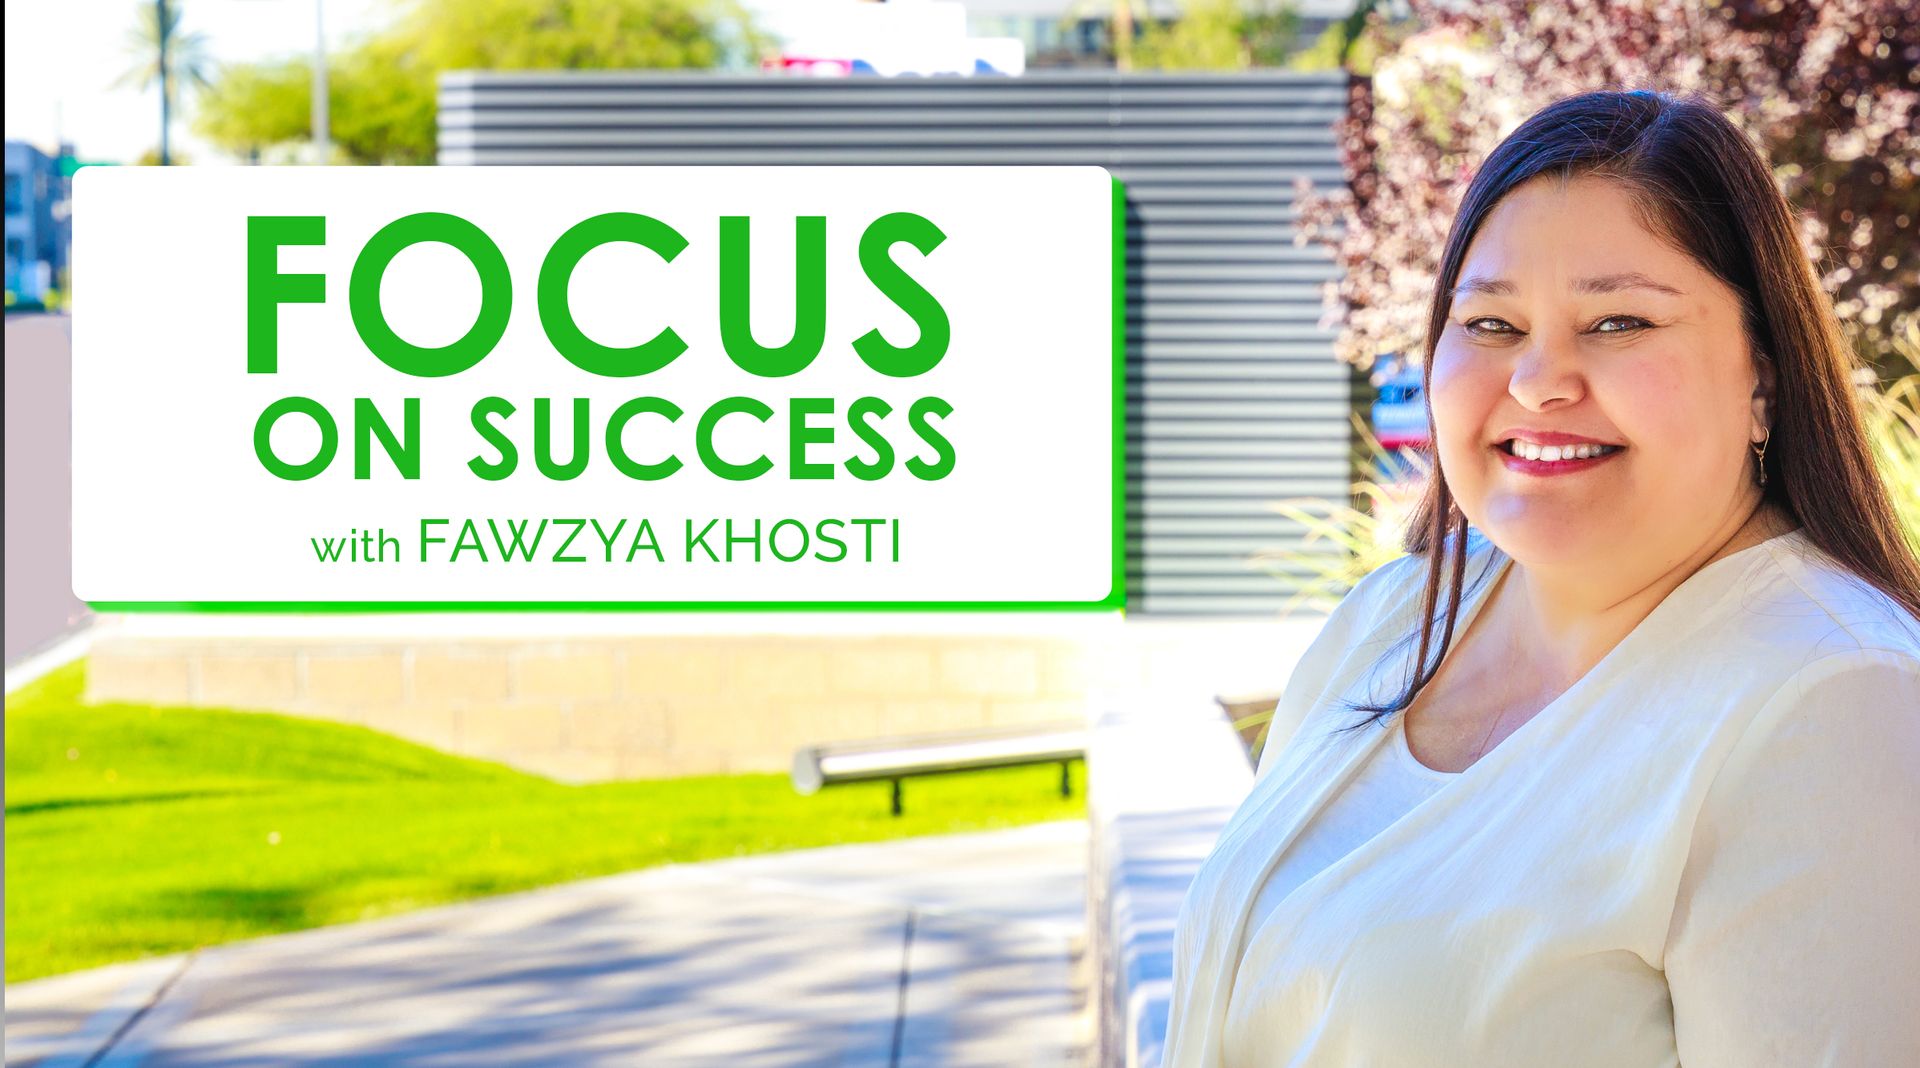 Focus on Success with Fawzya Khosti